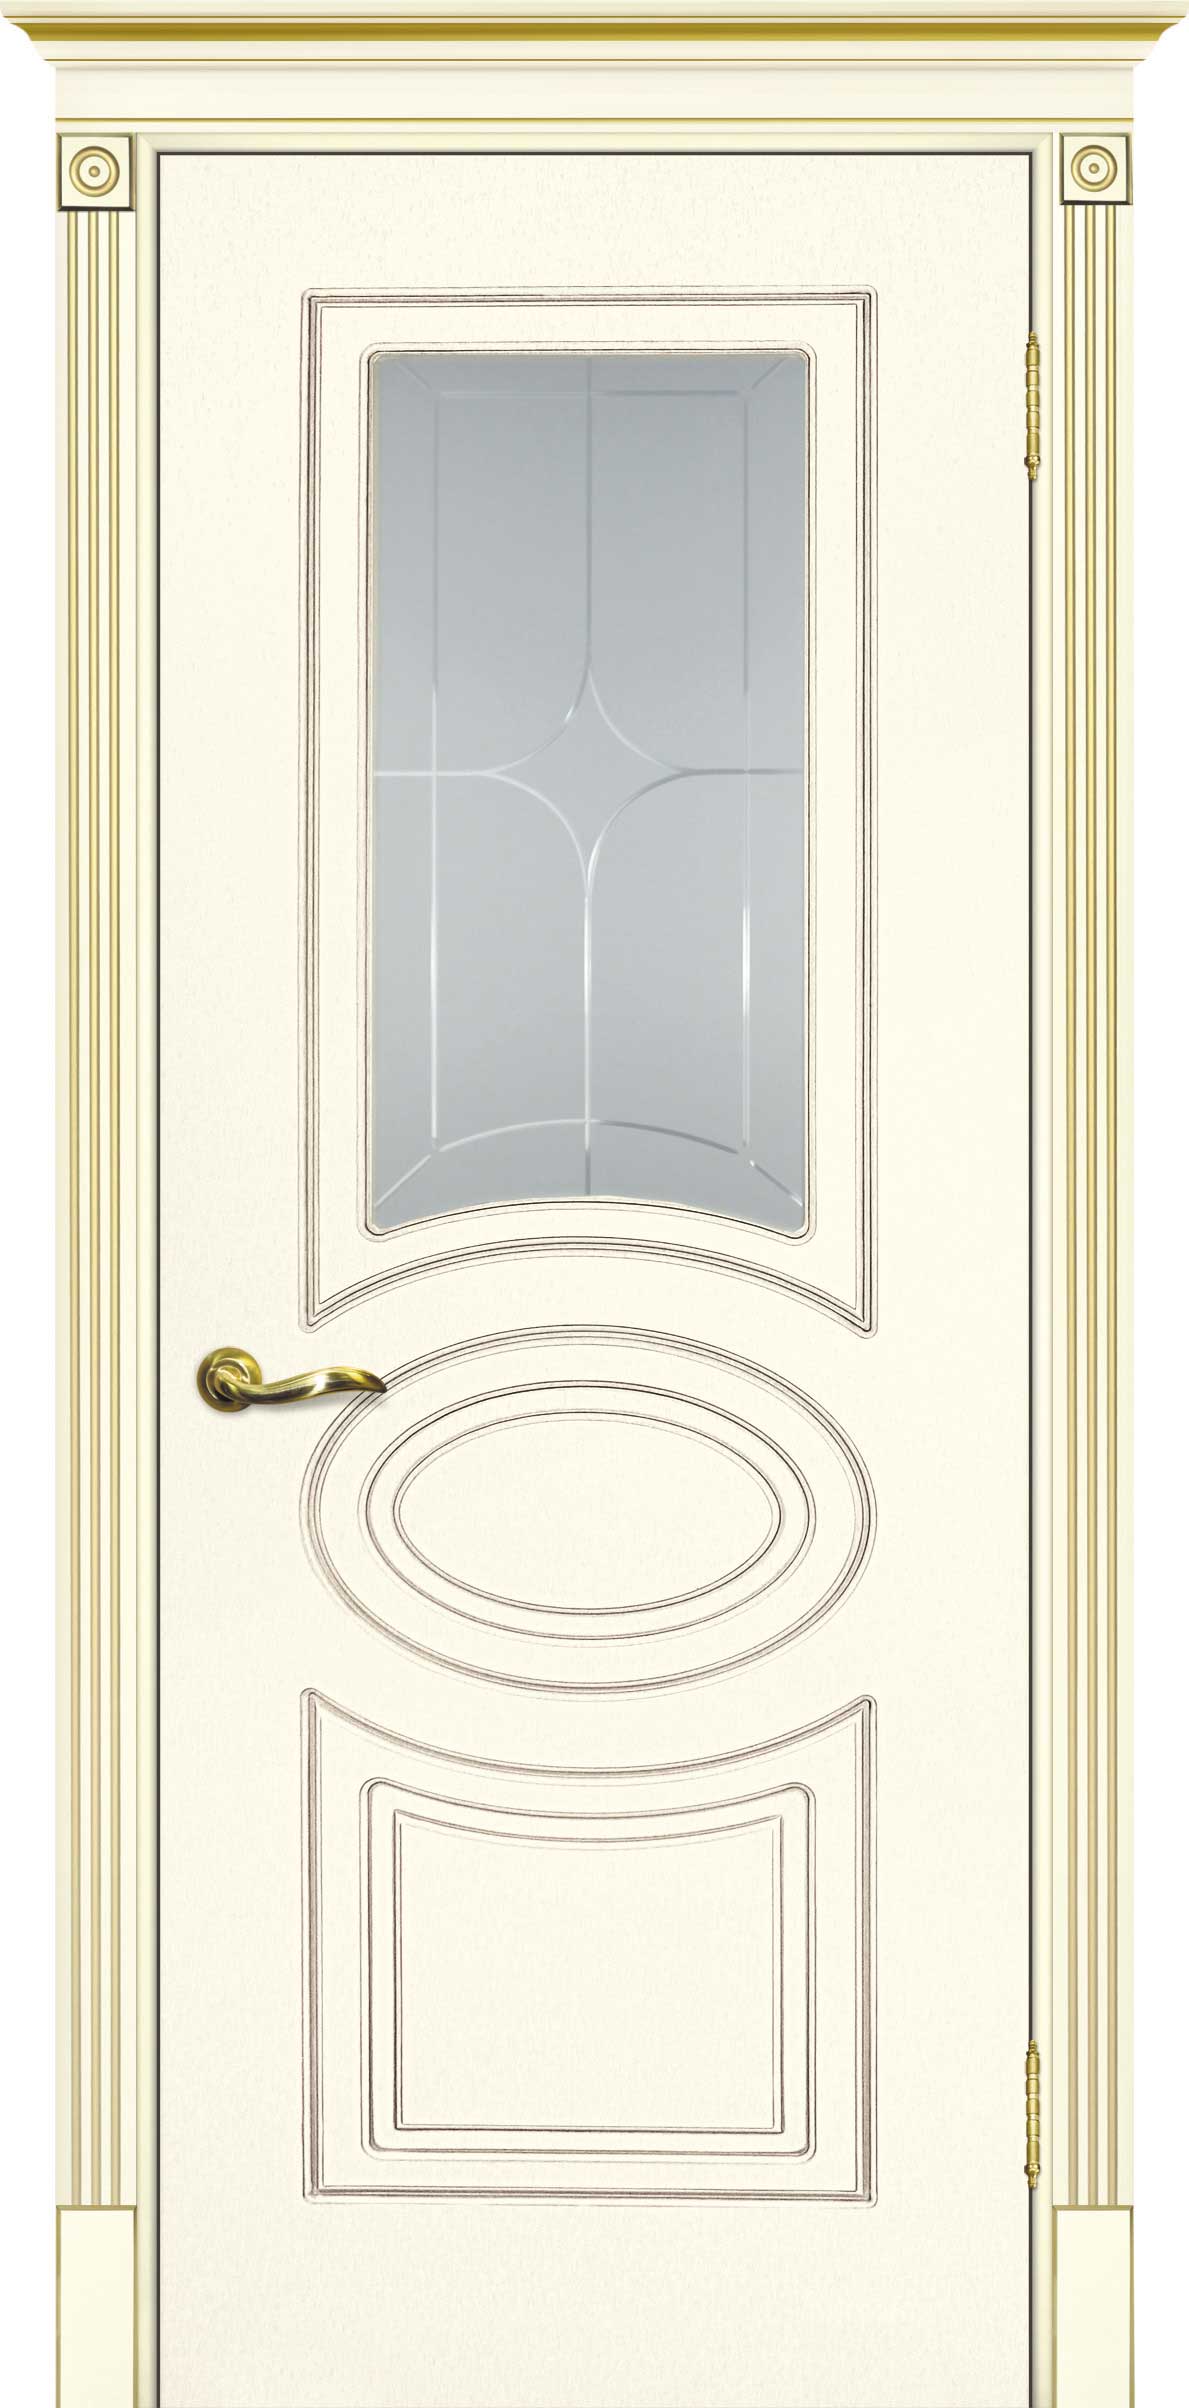 Двери крашеные (Эмаль) ТЕКОНА Смальта 03 со стеклом Слоновая кость ral 1013 патина золото размер 200 х 60 см. артикул F0000093372